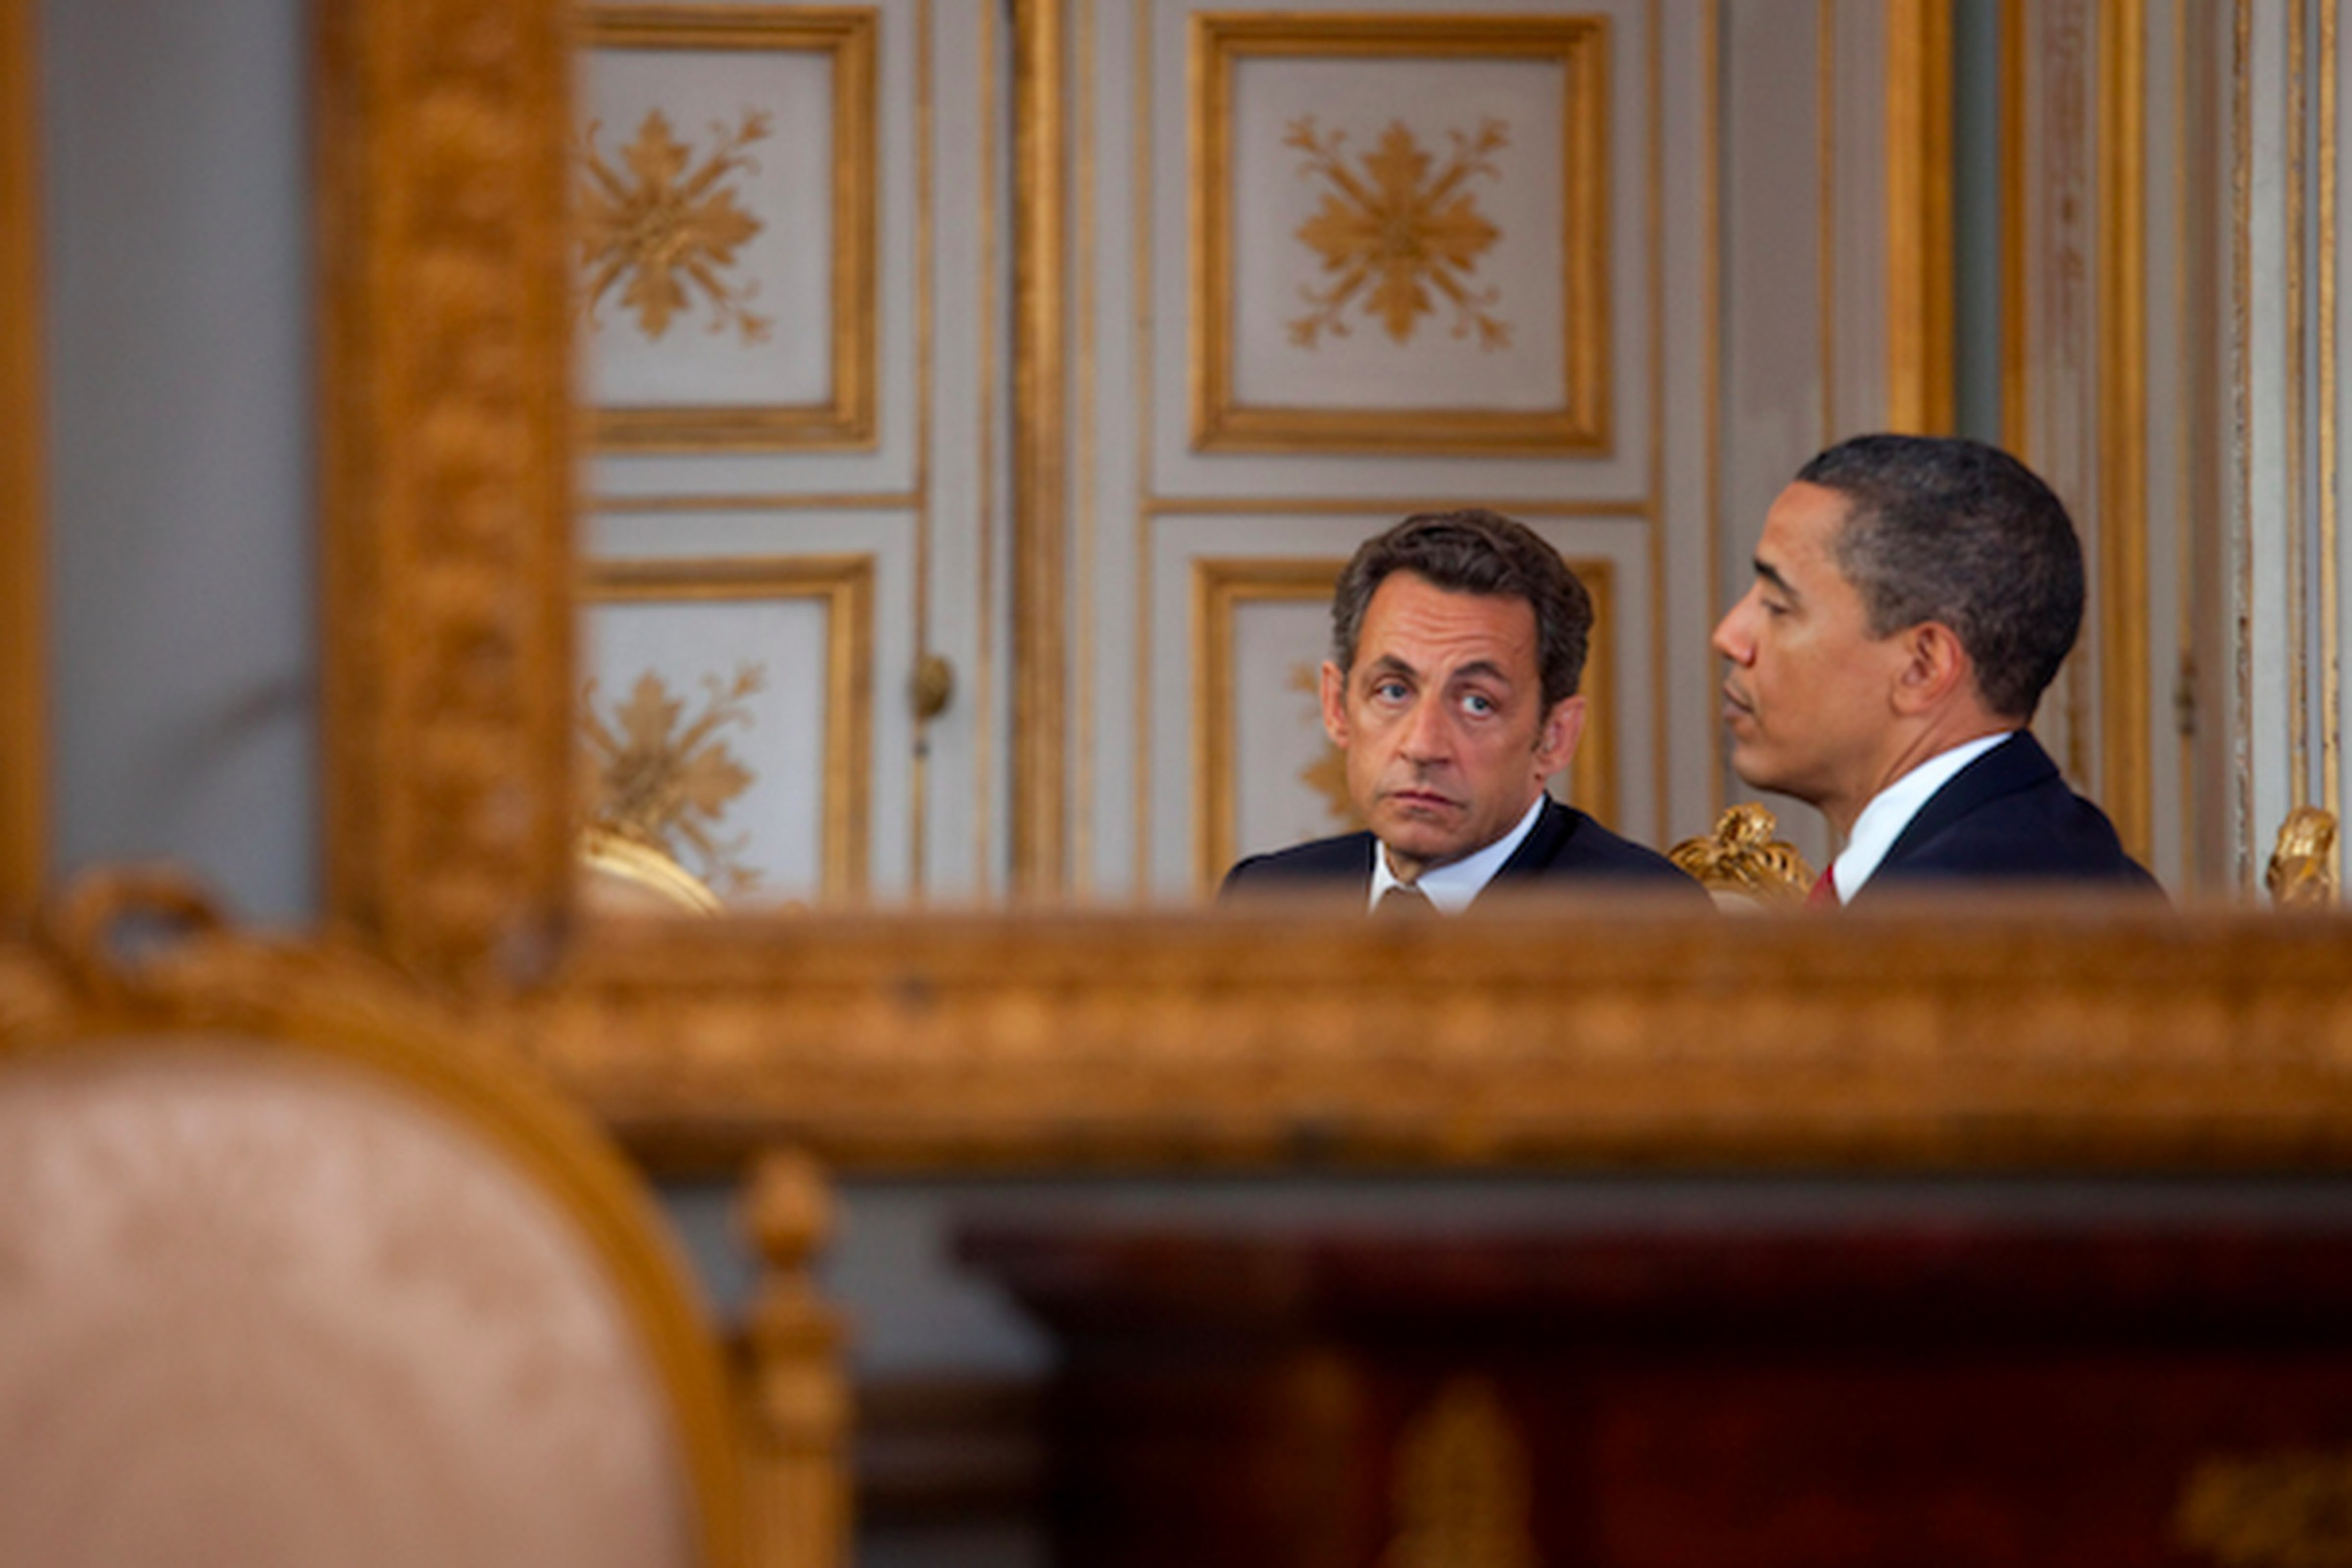 Nicholas Sarkozy White House Press Photo